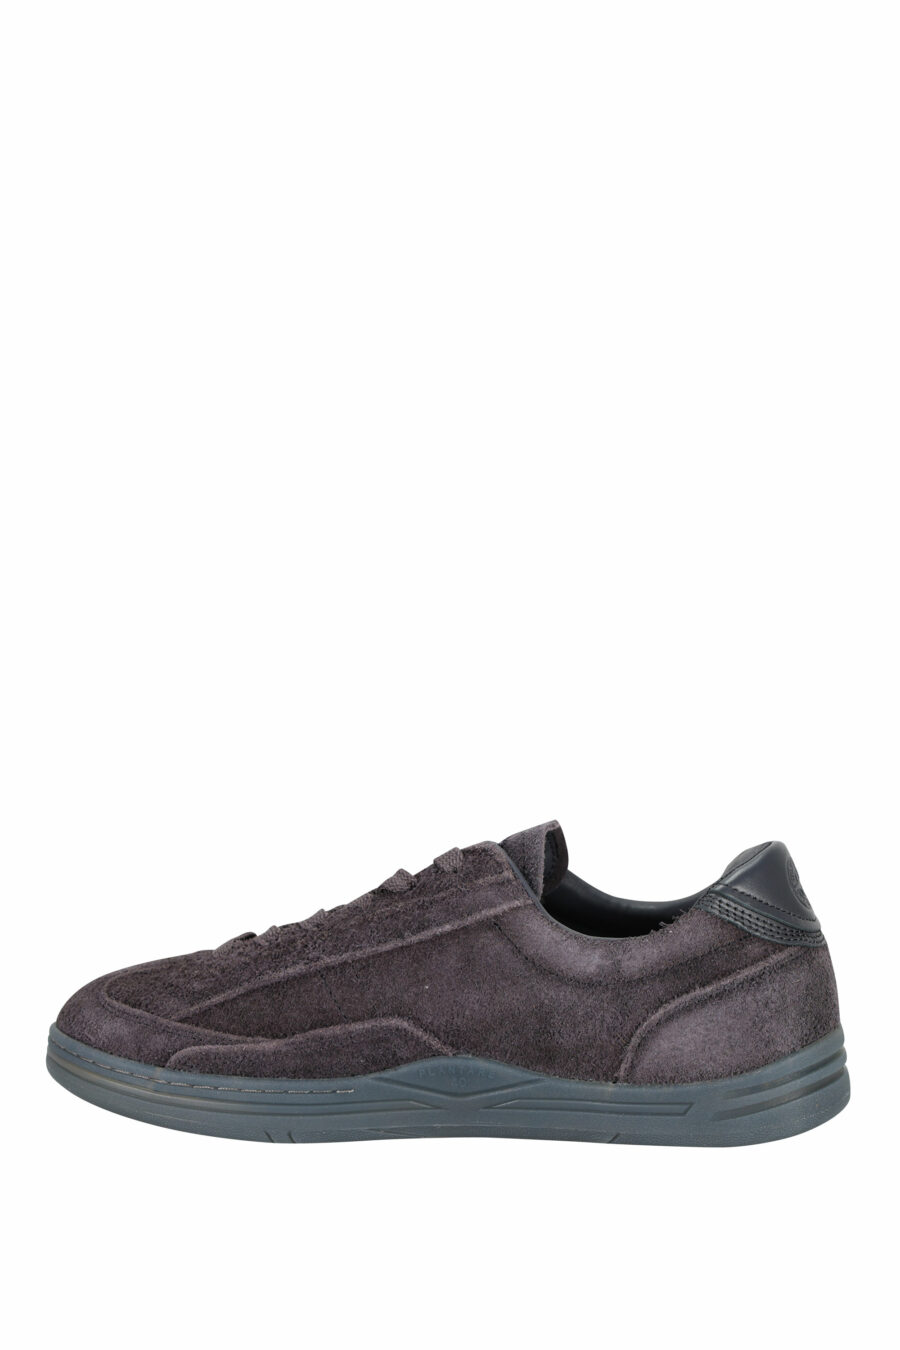 Zapatillas azul grisáceo con minilogo y suela gris - 8052572937910 2